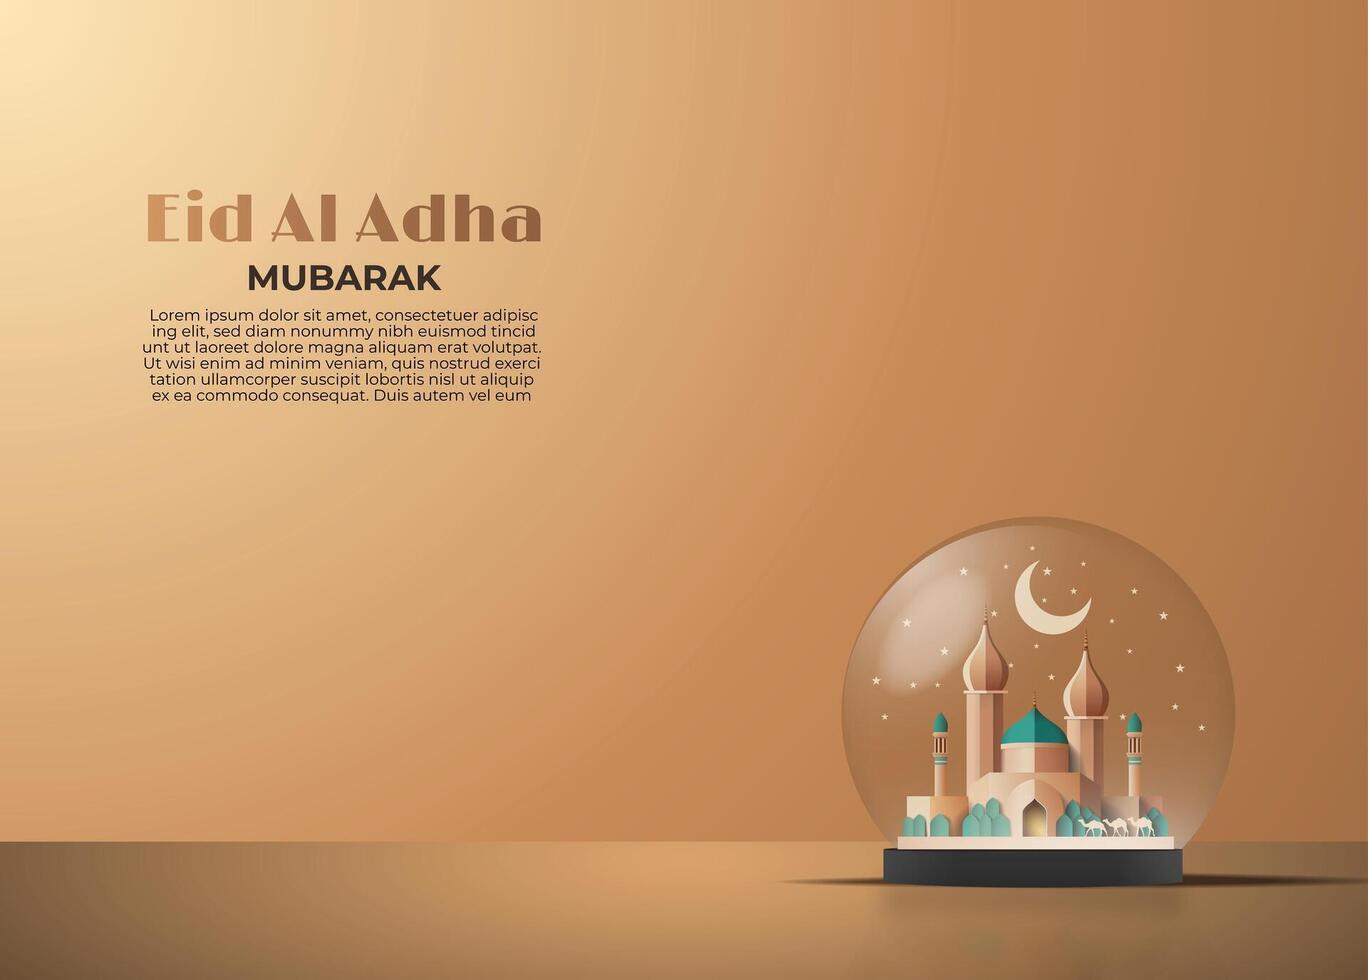 eid Alabama adha Mubarak saludo tarjeta con un mezquita en un cristal pelota 3d vector ilustración